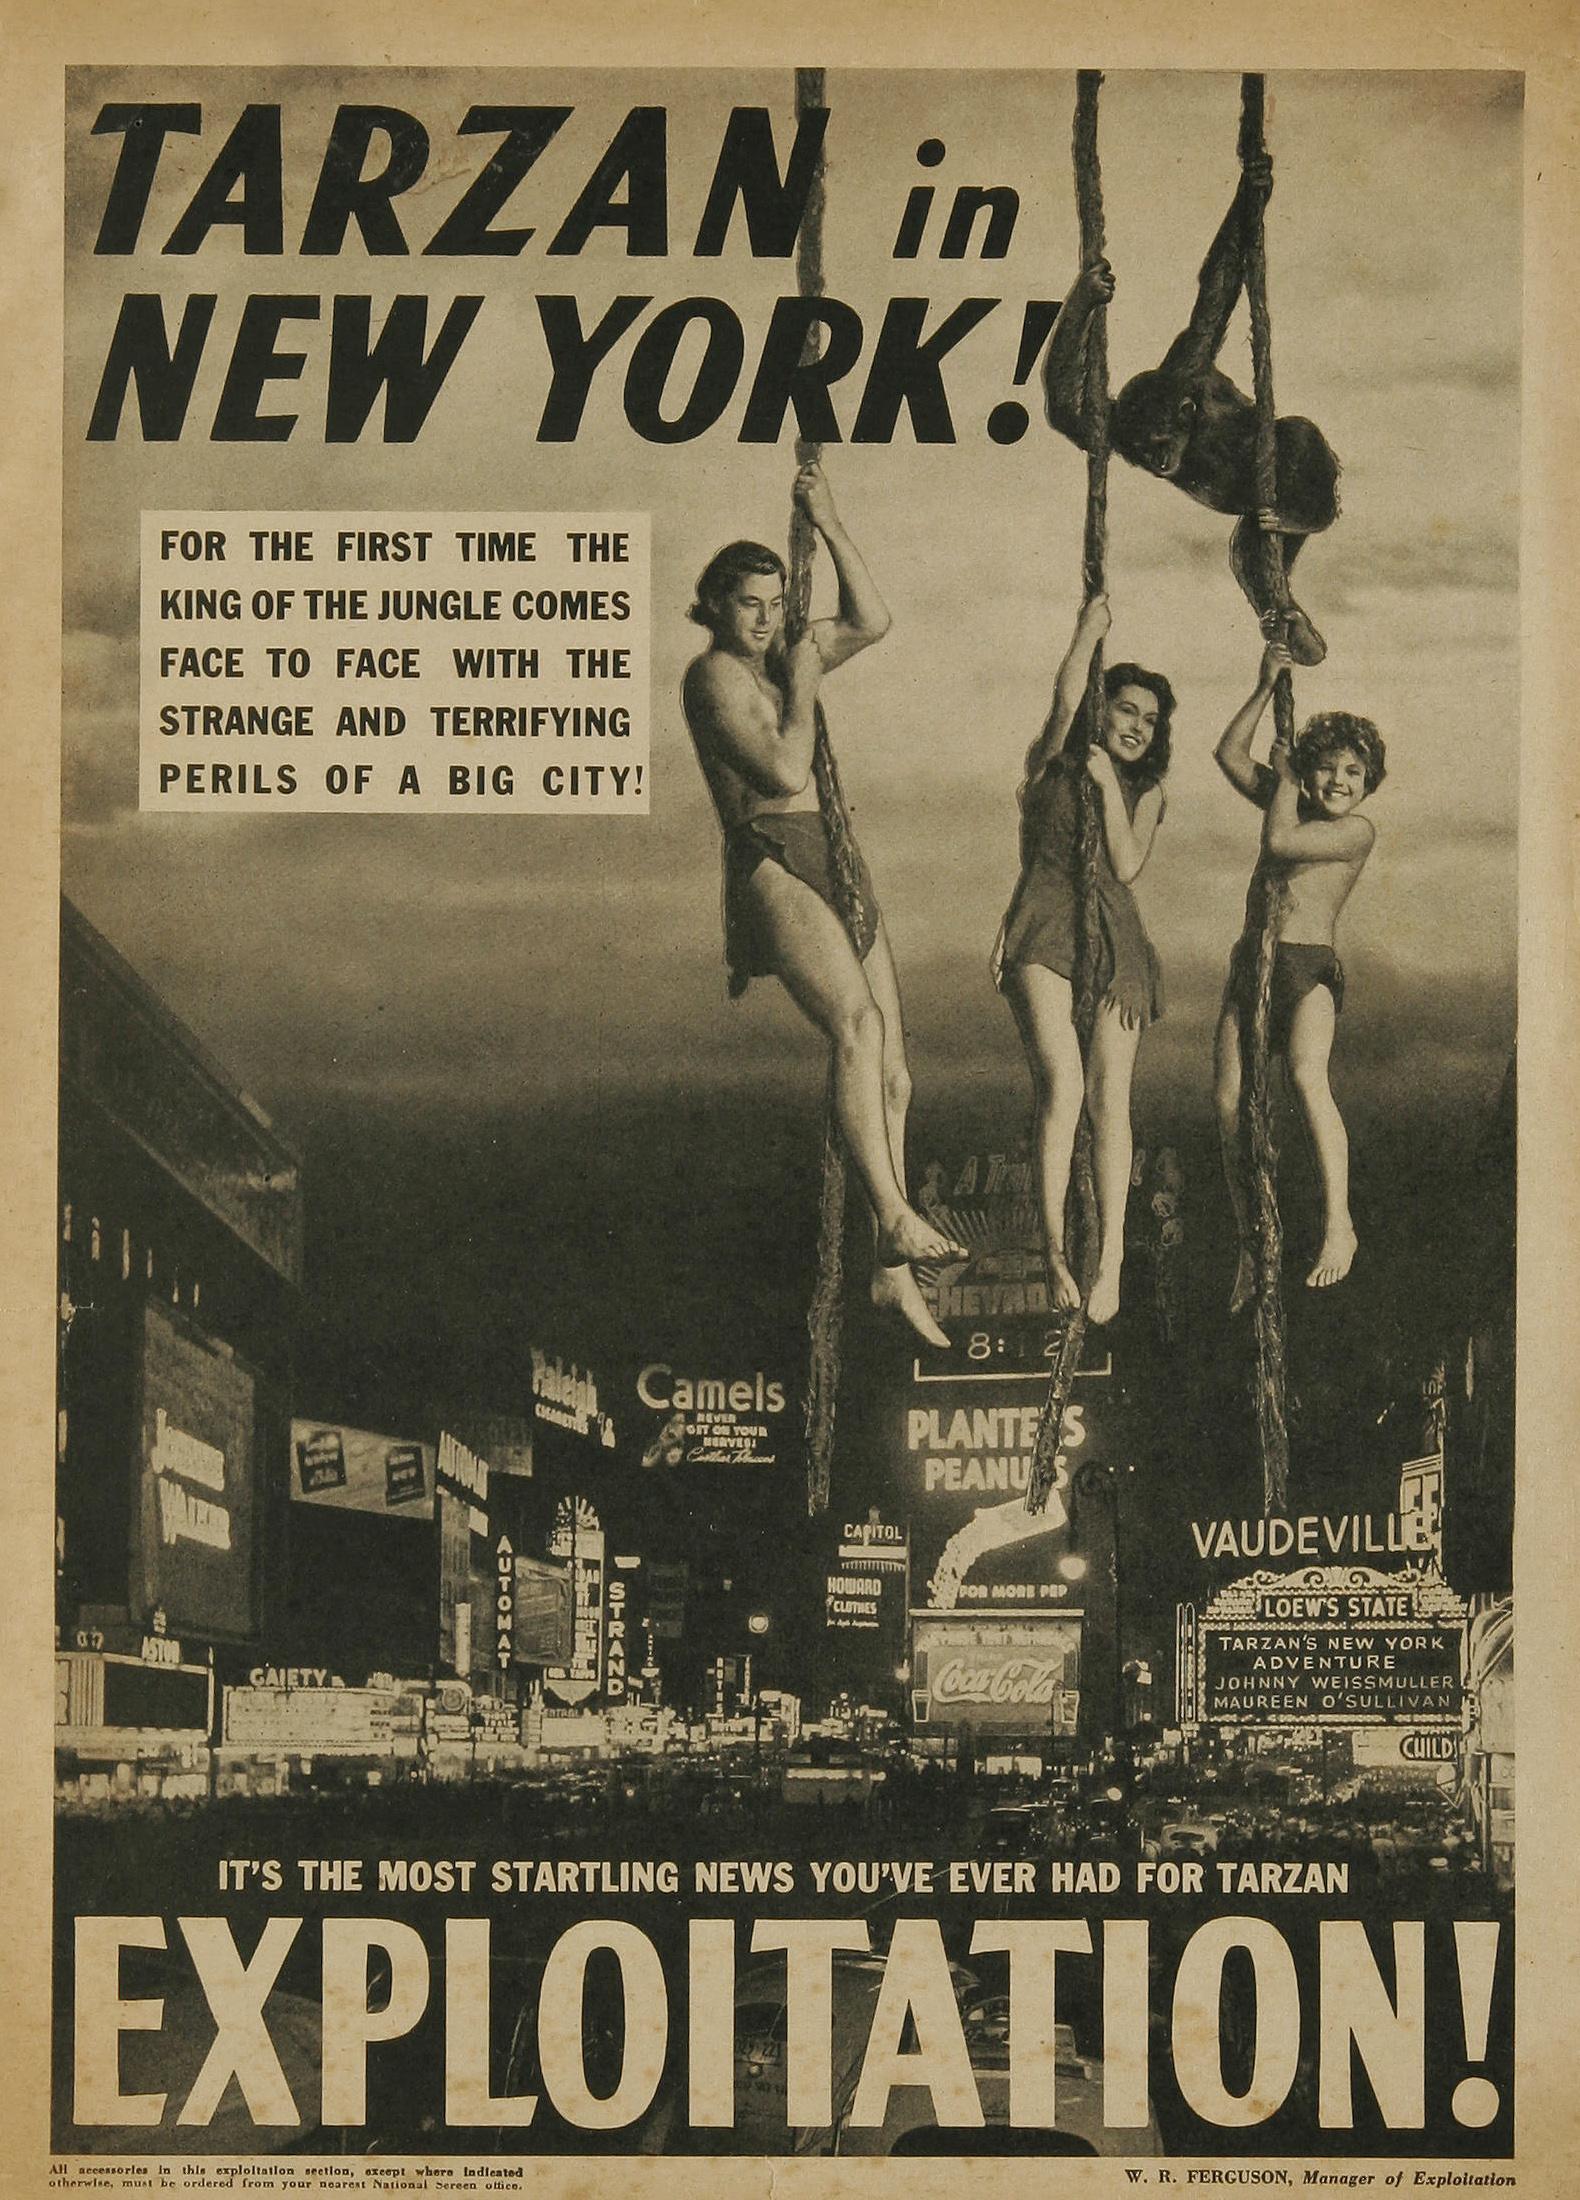 Постер фильма Tarzan's New York Adventure